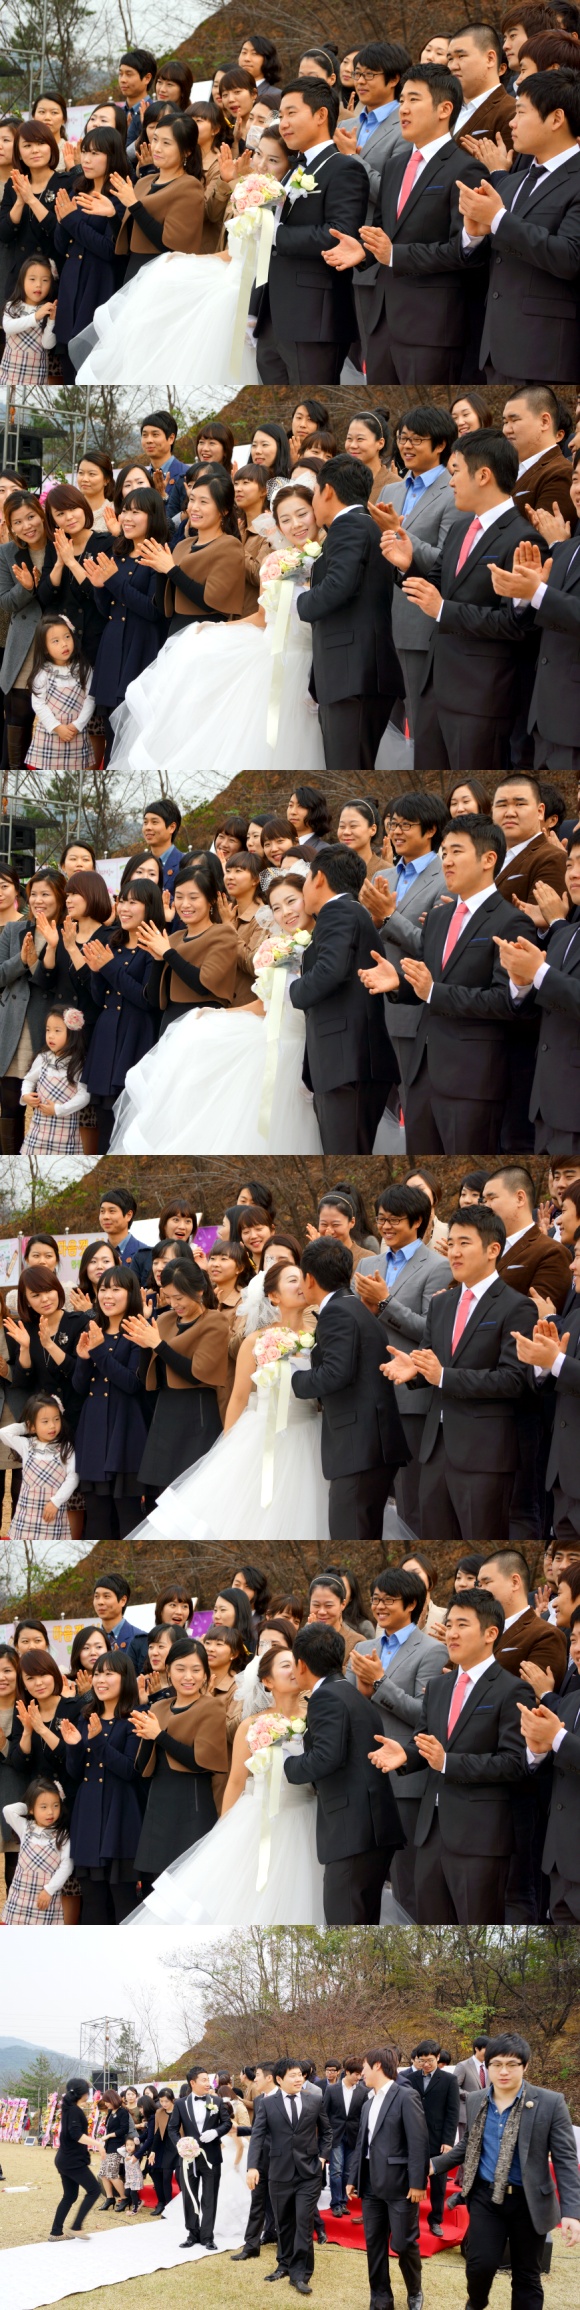 11. 13일 05학번 김태희의 결혼을 축하합니다.